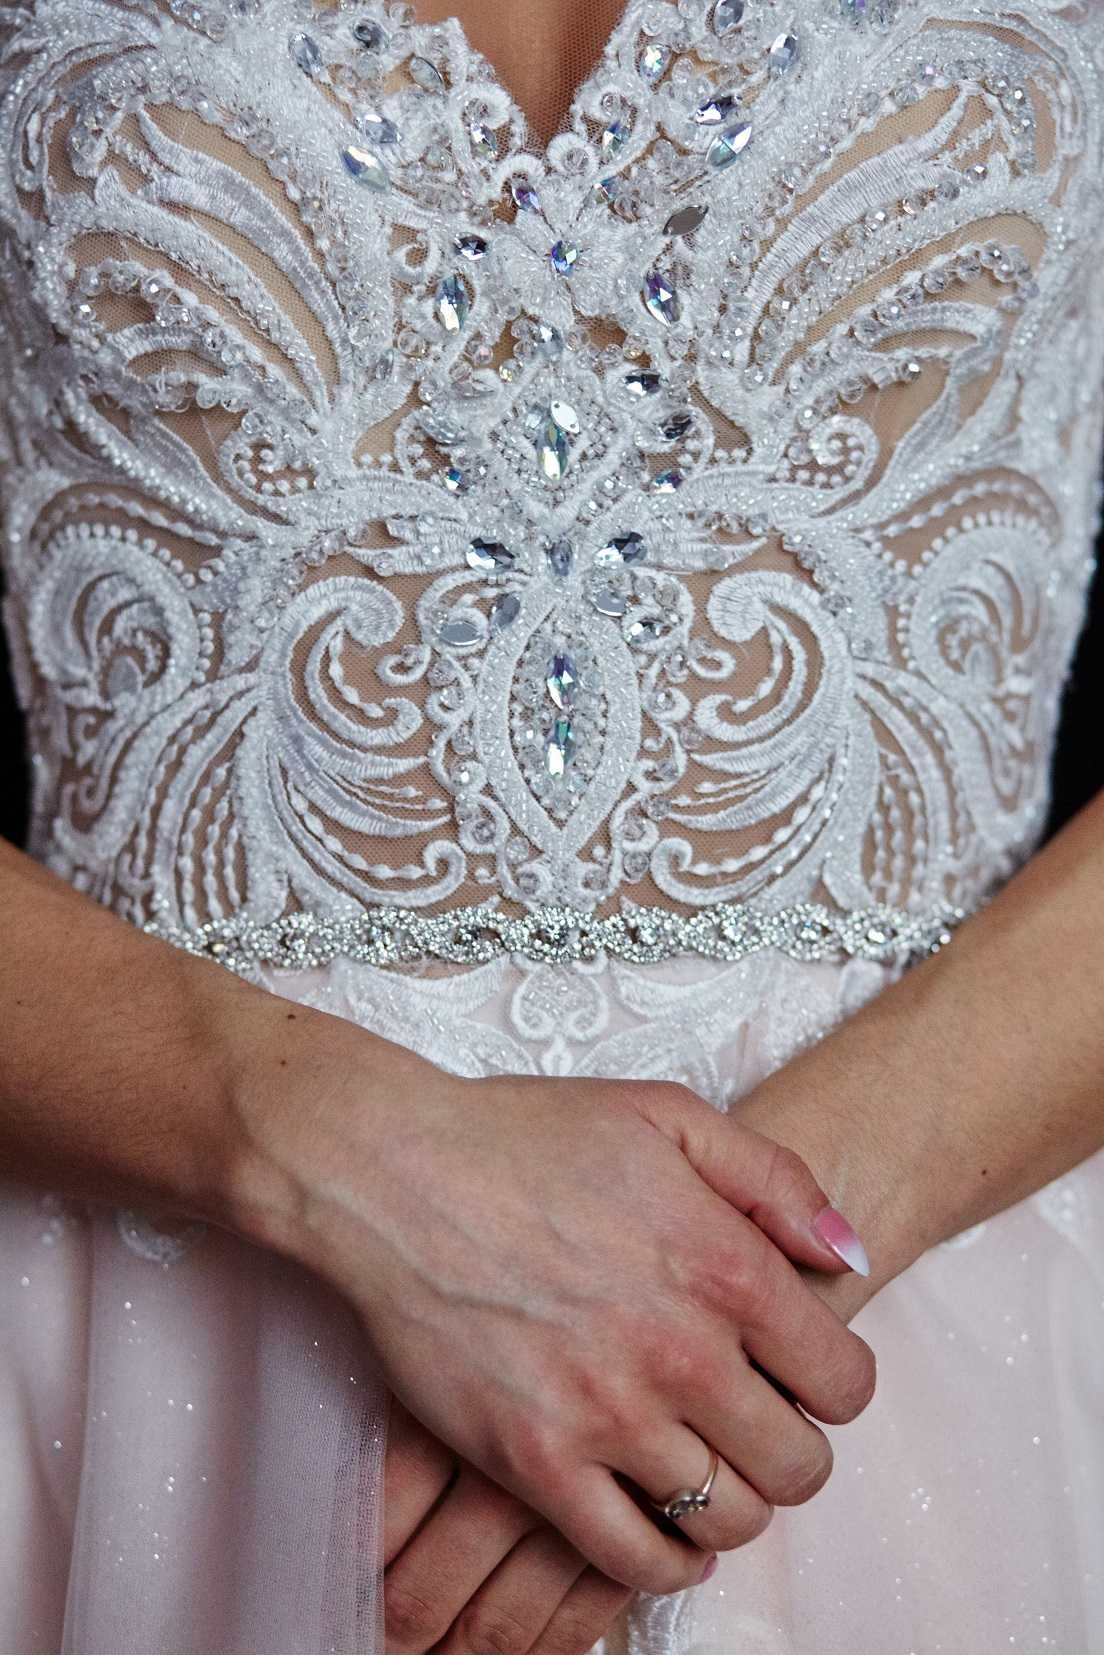 Suknia Ślubna 36 zdobiona kryształkami Swarovski koło pudrowy róż